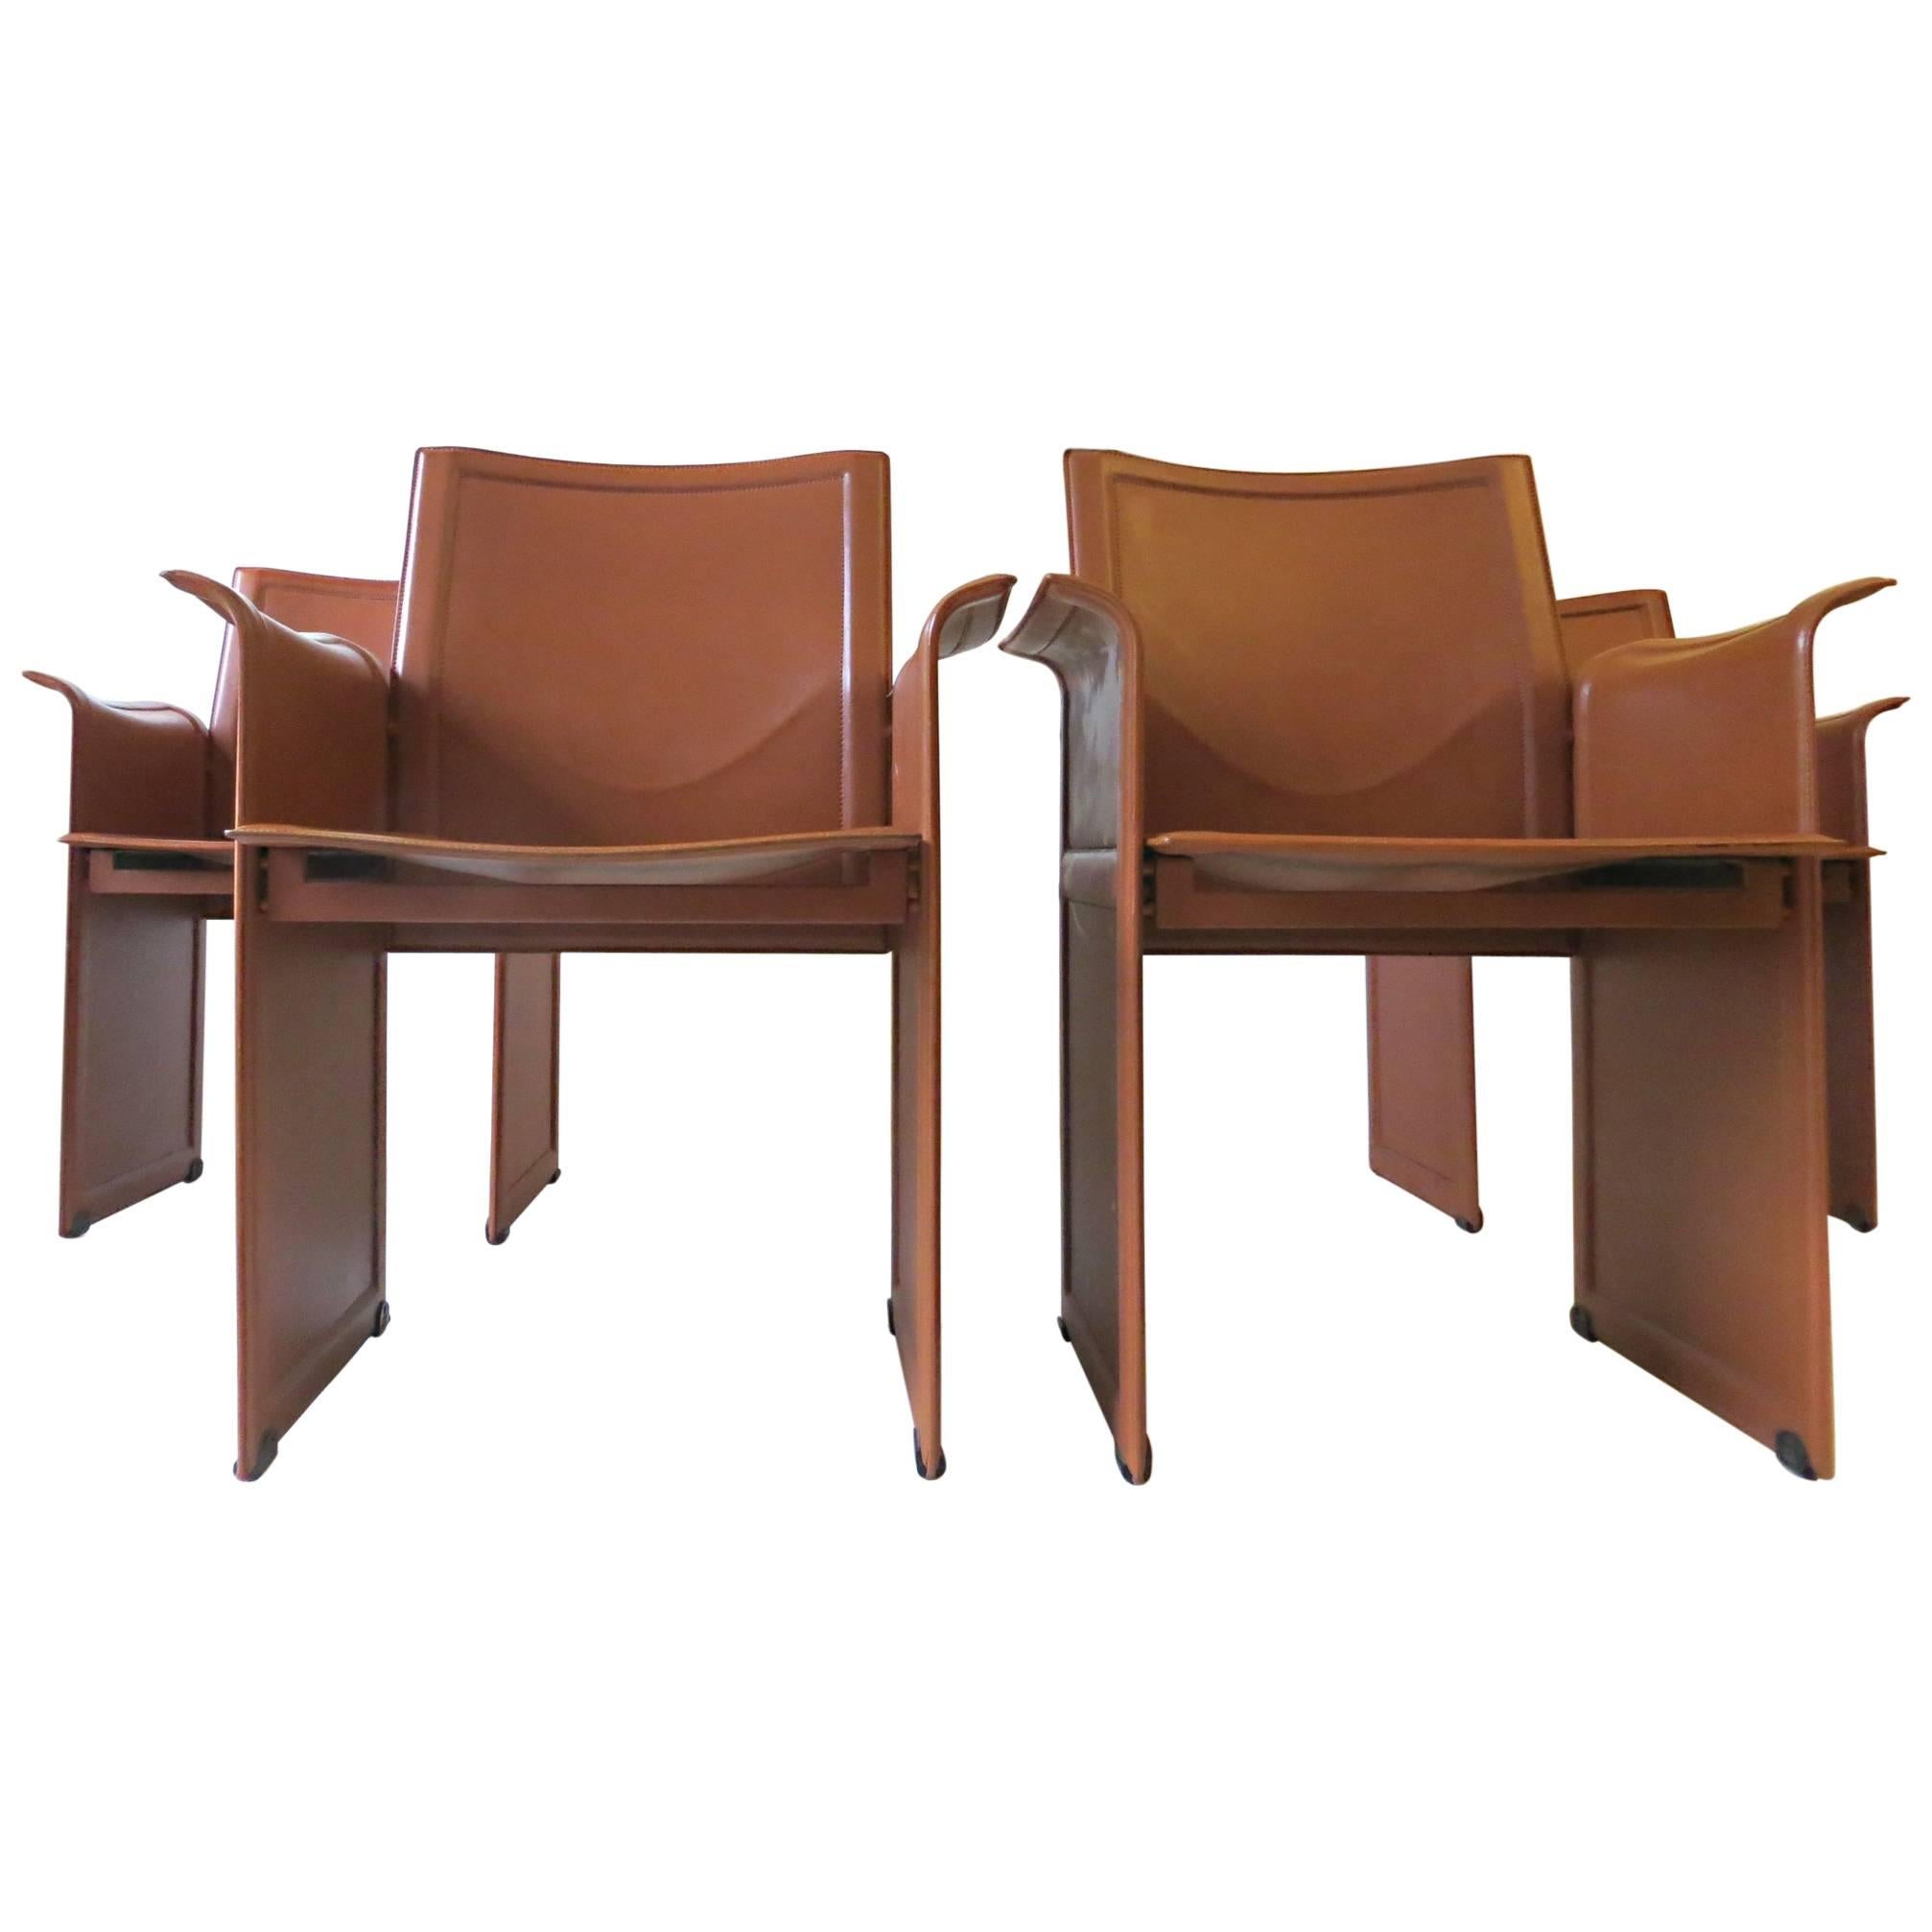 Four Italian 1970s Korium Chairs by Tito Agnoli for Matteo Grassi